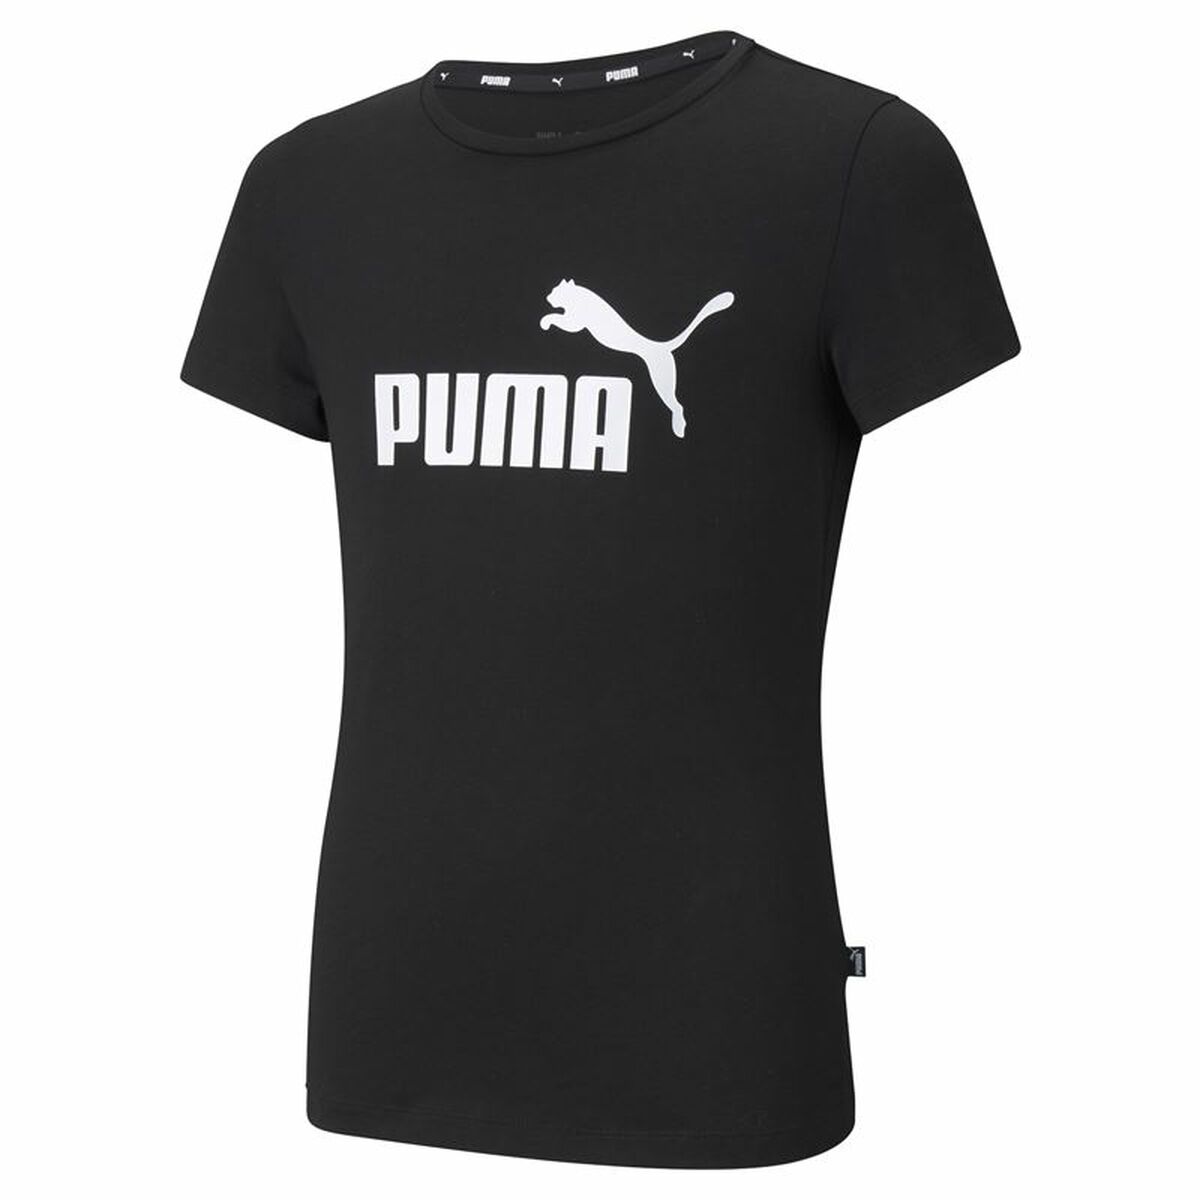 Osta tuote Lasten Lyhythihainen paita Puma Ess Logo G Musta (Koko: 9-10 vuotta) verkkokaupastamme Korhone: Urheilu & Vapaa-aika 20% alennuksella koodilla VIIKONLOPPU